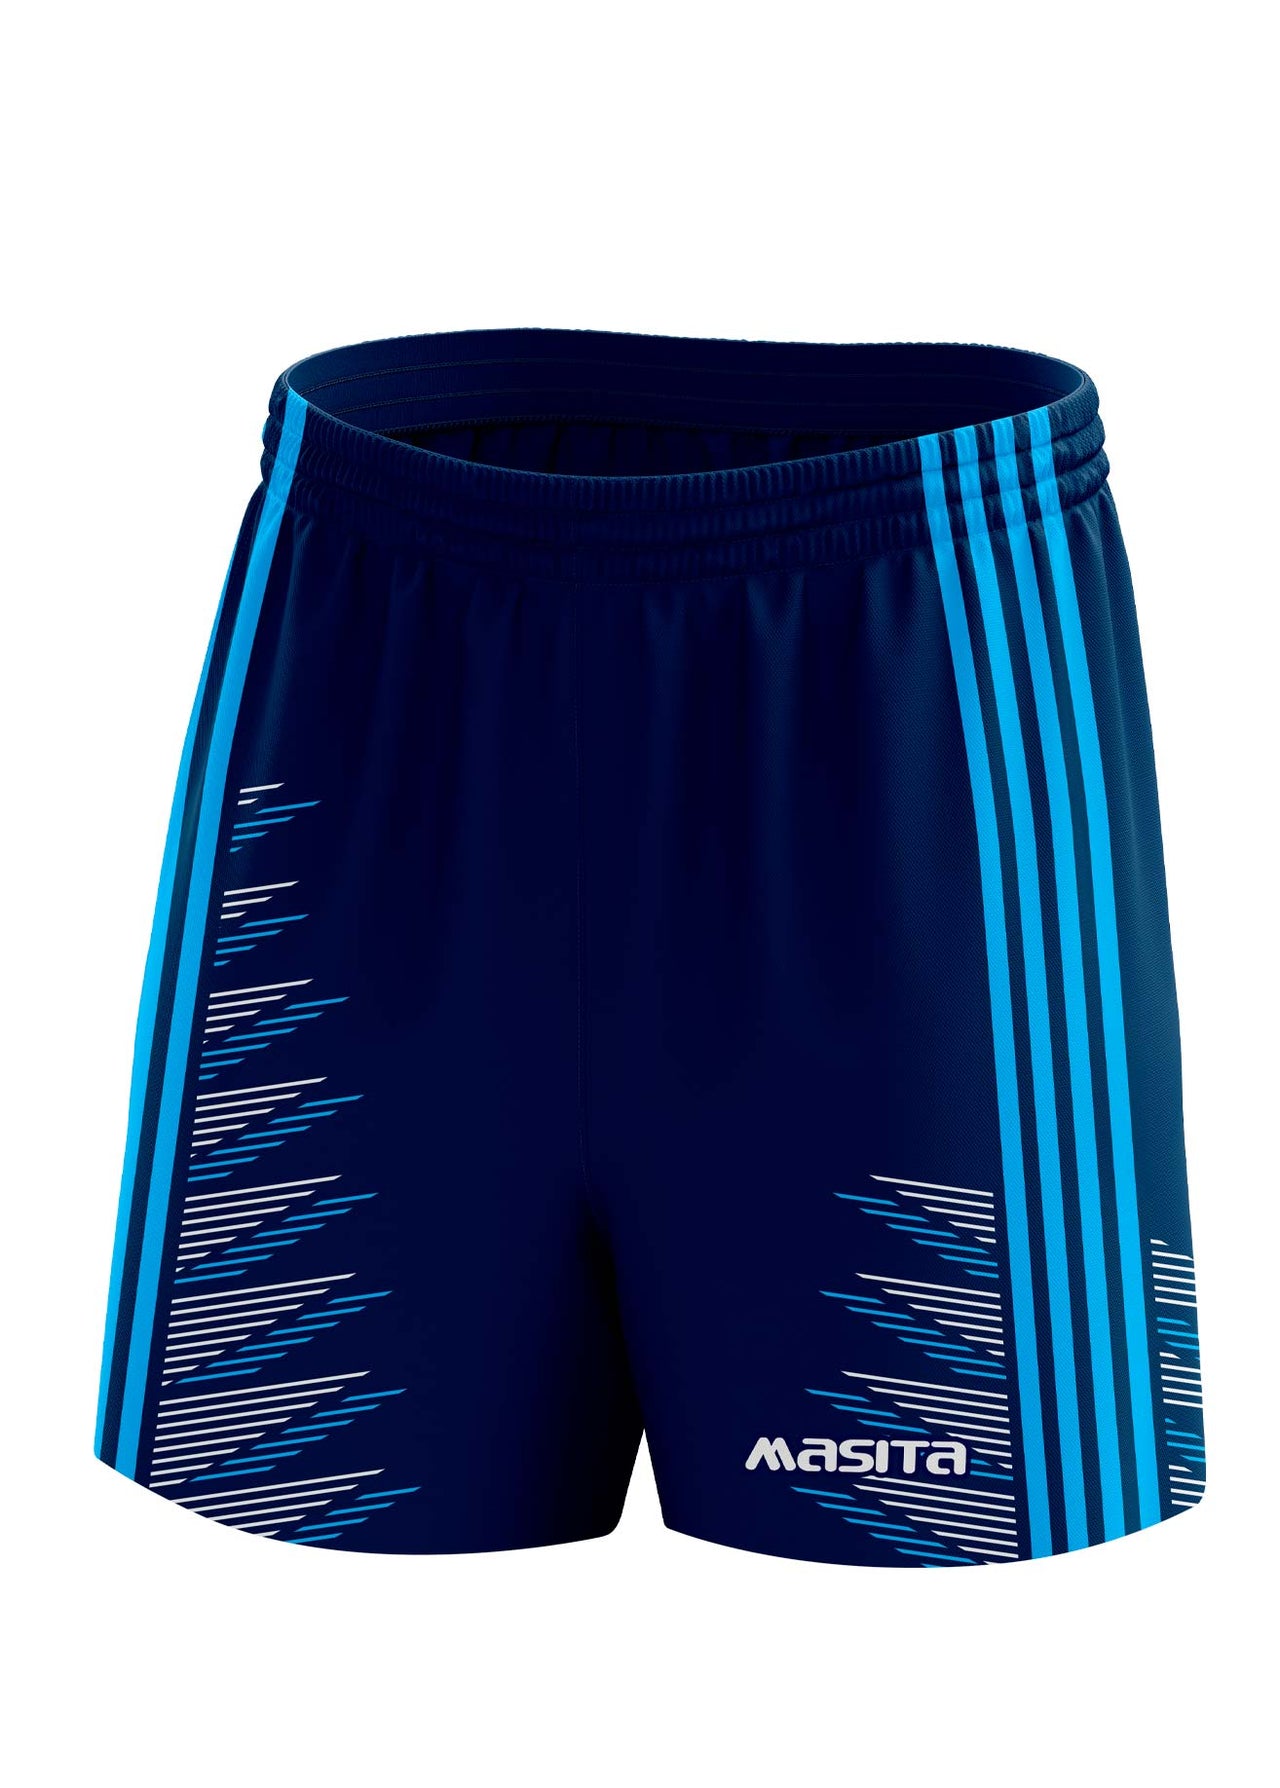 Hydro Gaelic Shorts Navy/Sky Blue/White Adult